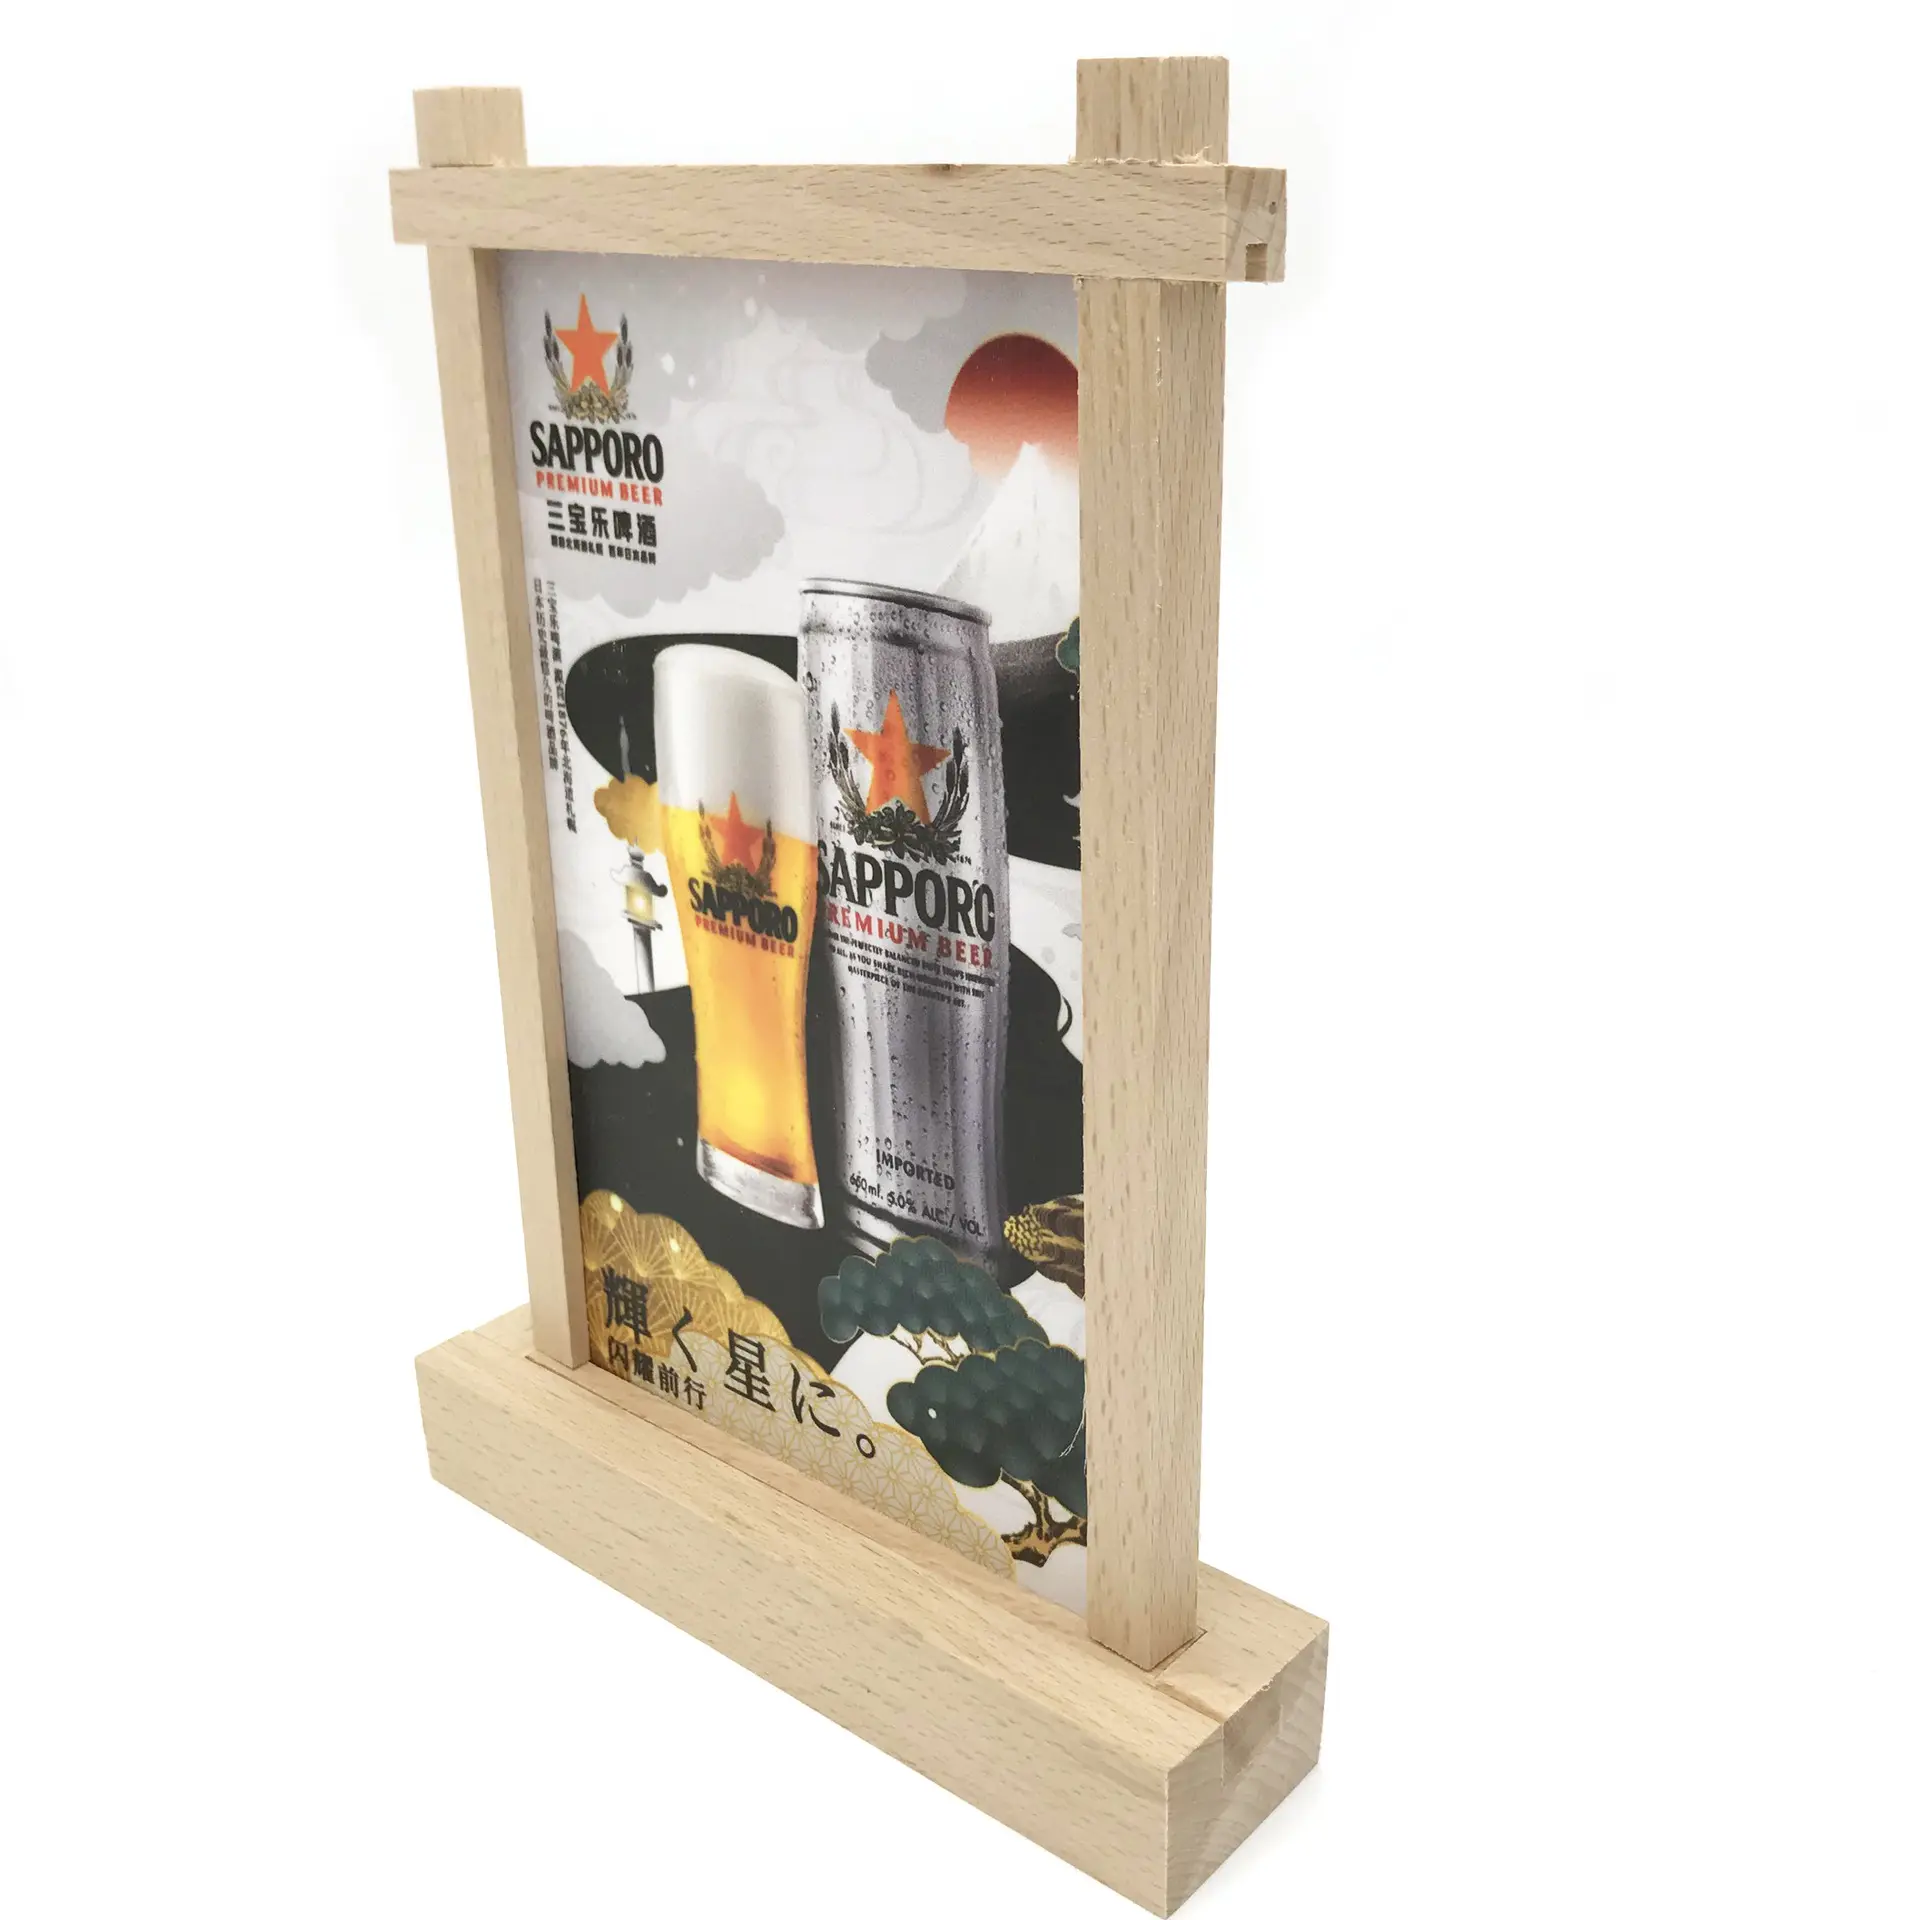 Holz Acryl Menü halter Tischplatte Zelt Mini Menü Tafel Klar Acryl Rahmen Holz Basis Restaurant Display Menü